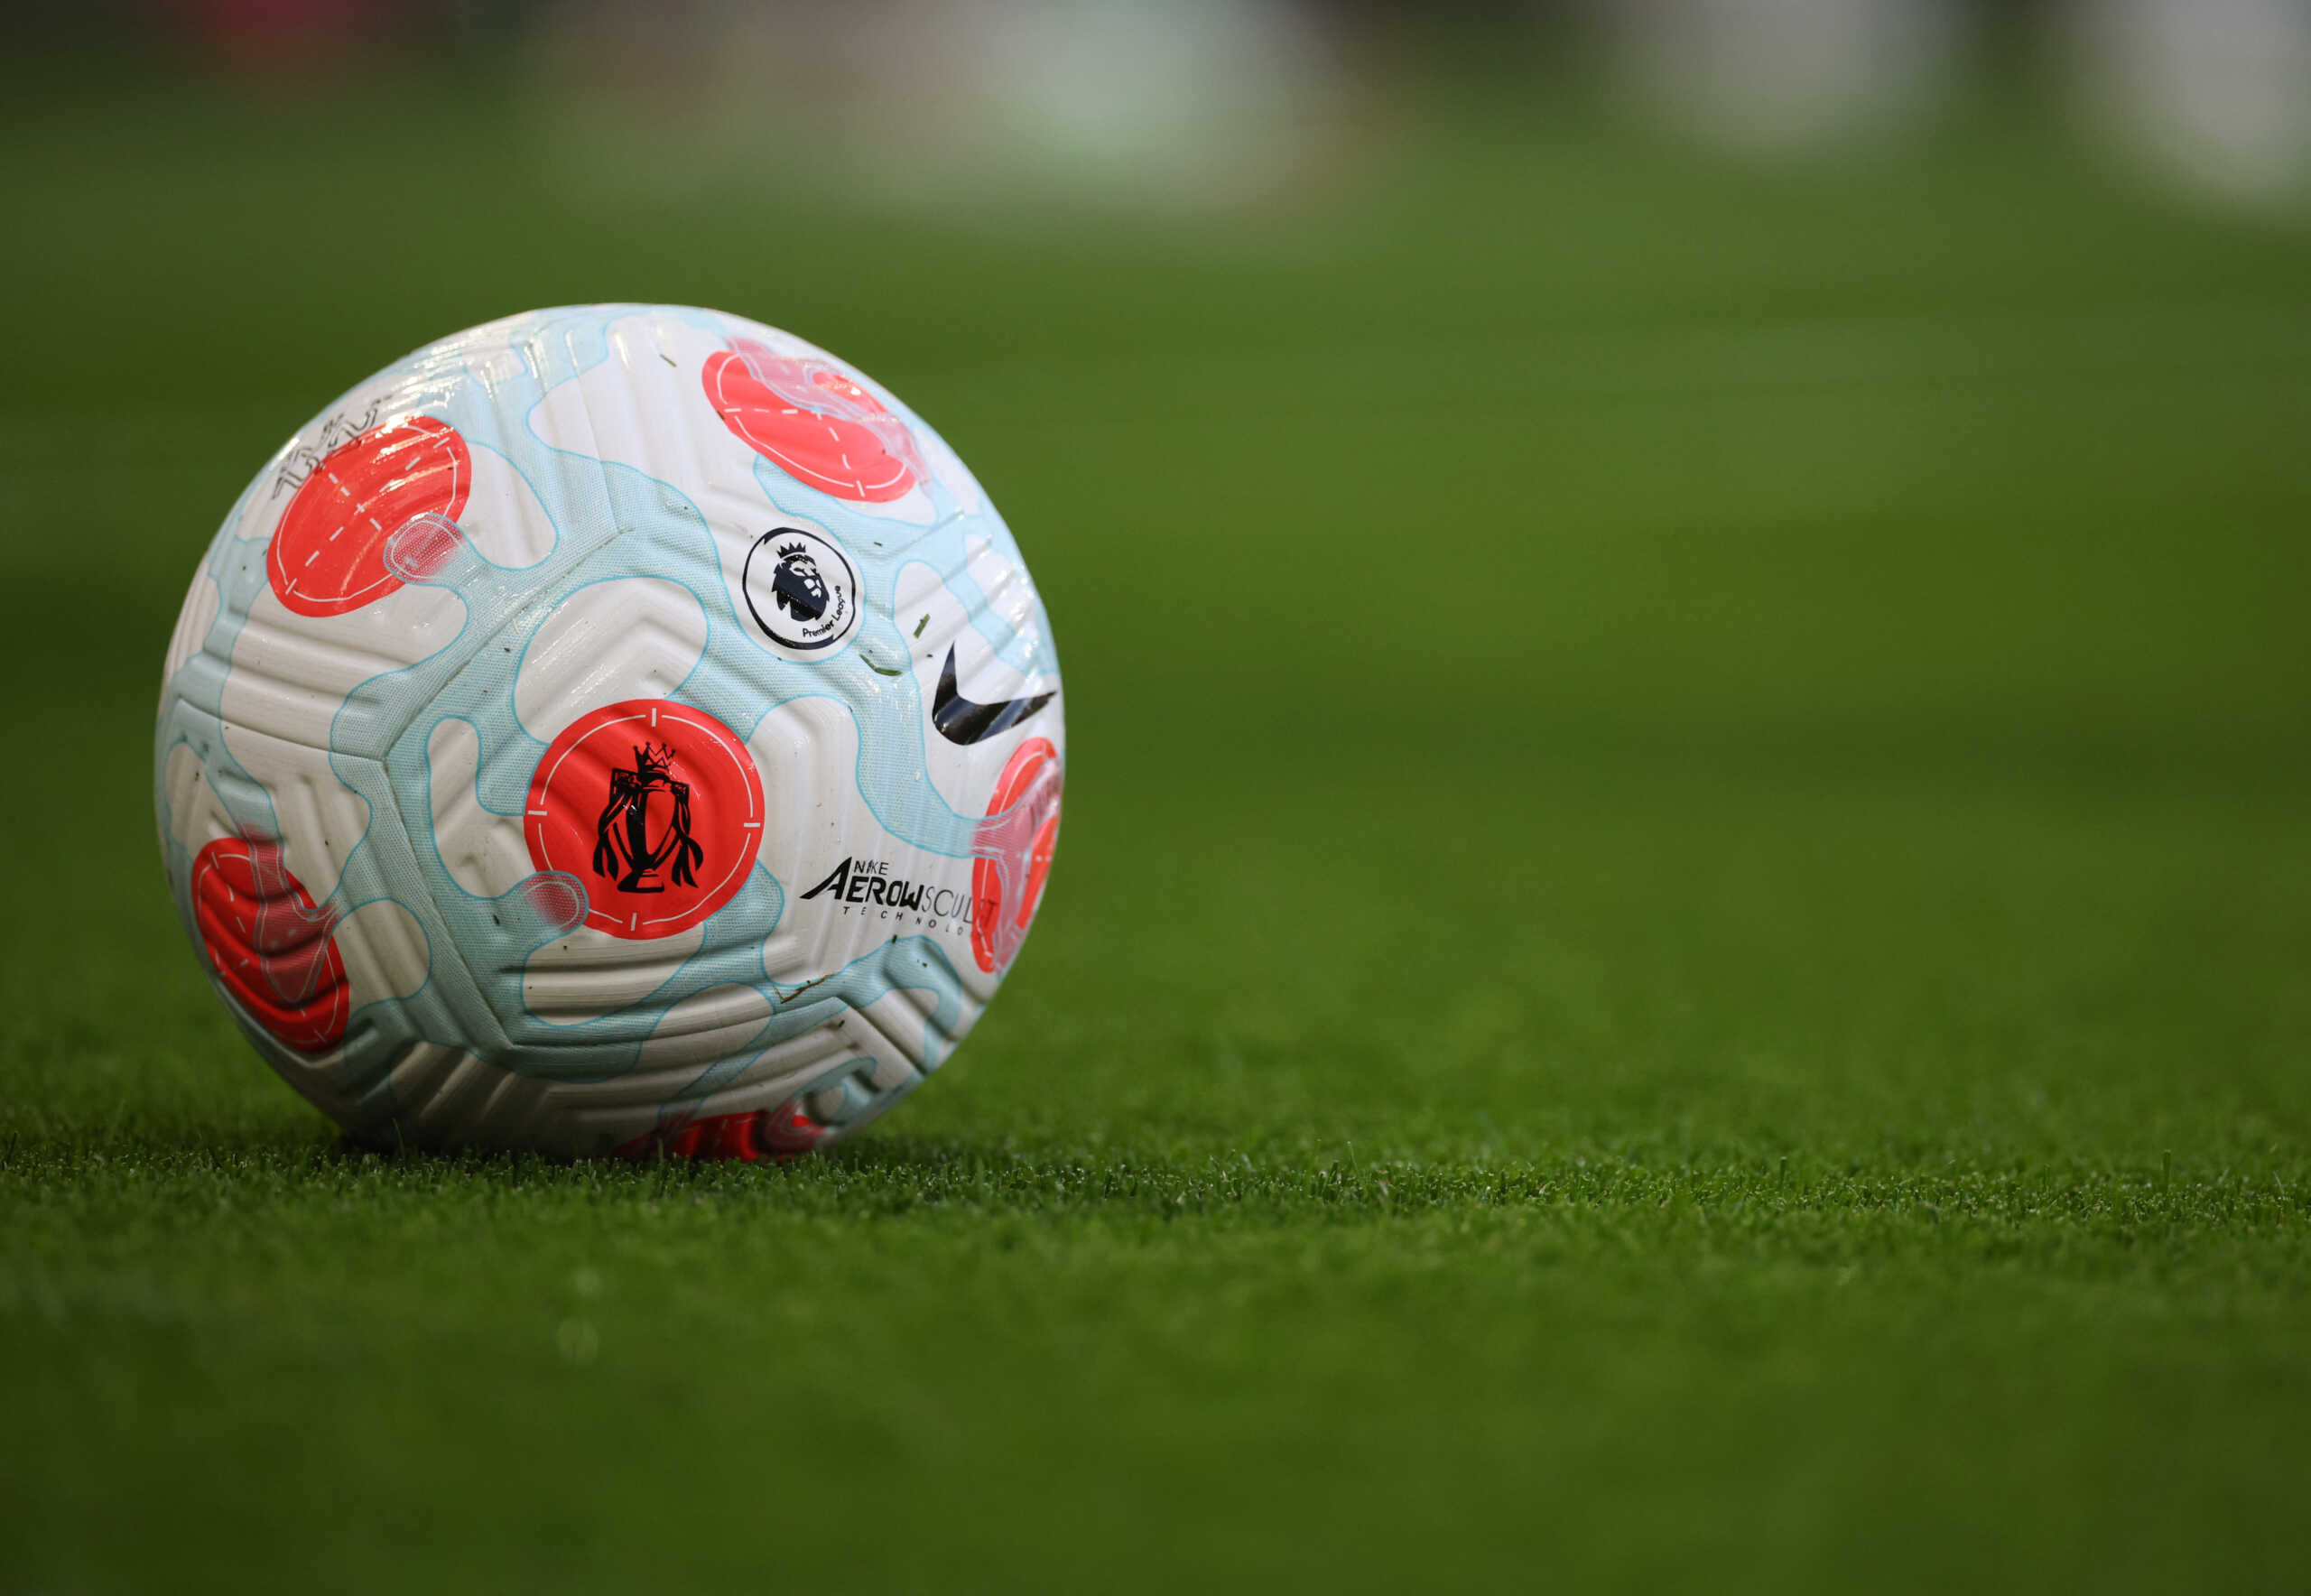 Με Τσέλσι – Τότεναμ, La Liga, Bundeslinga και Serie A οι αθλητικές μεταδόσεις της ημέρας (14/8)